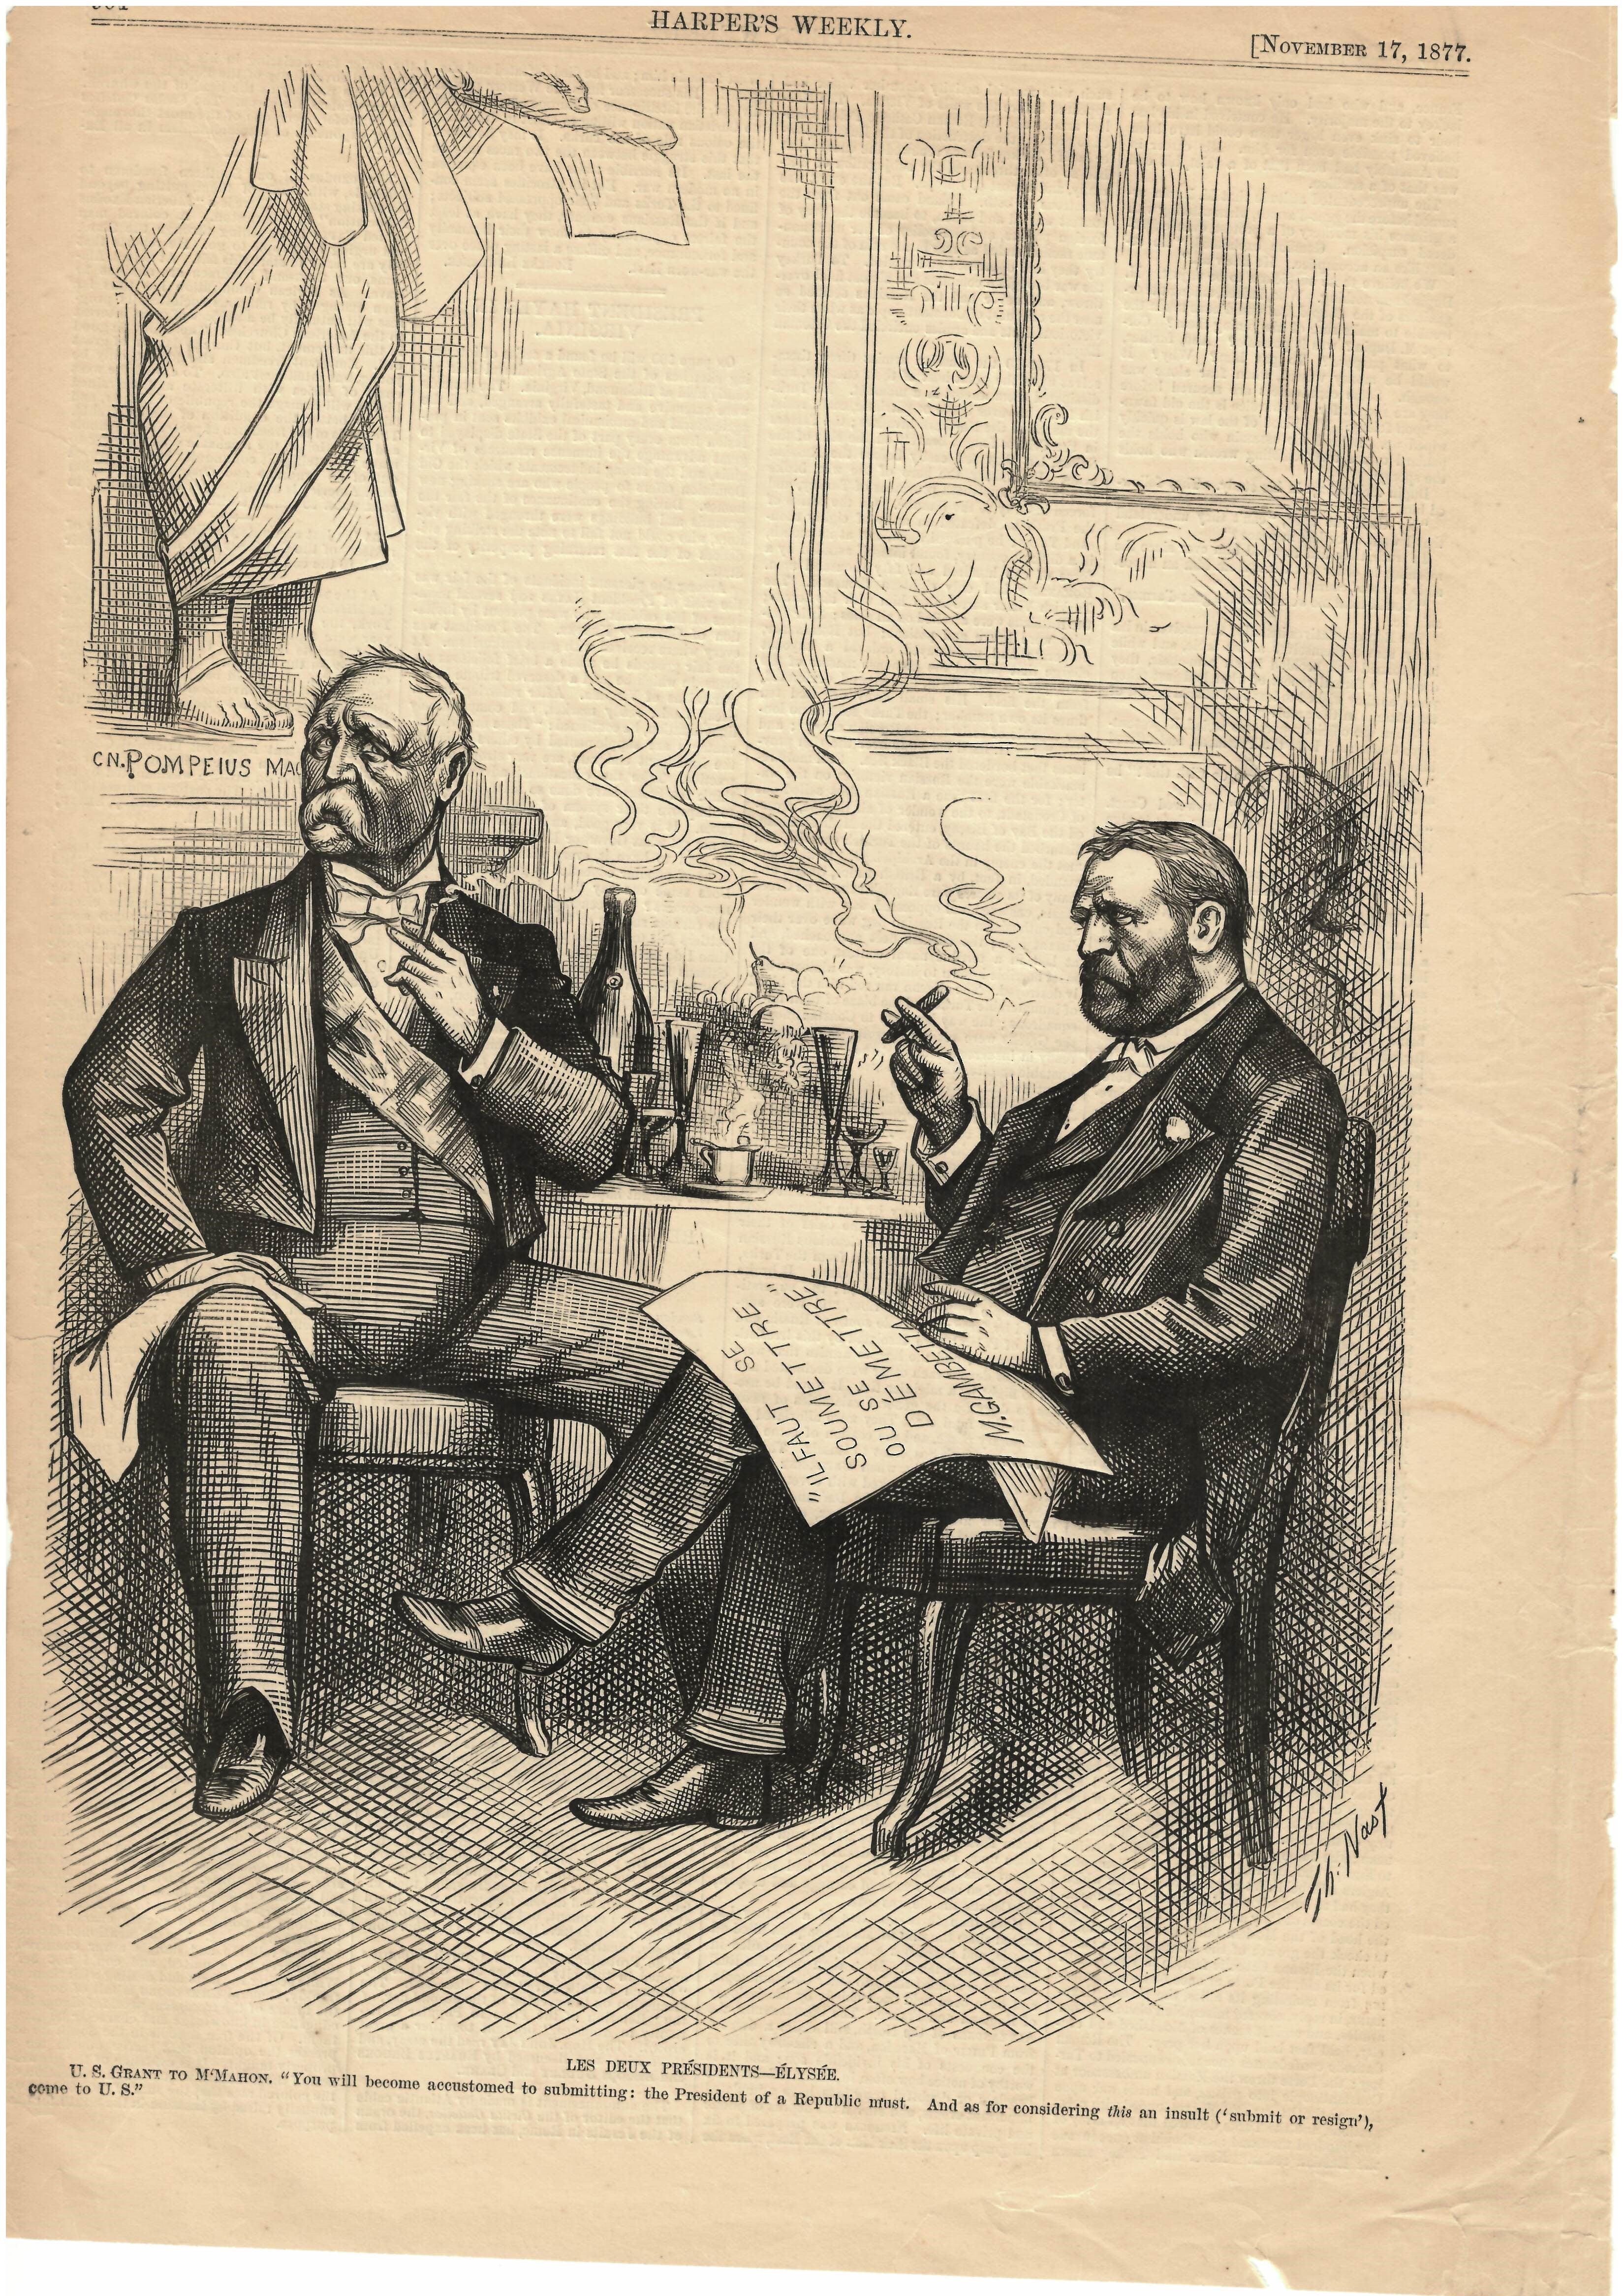 Harper's Weekly November 17, 1877 Les Deux Présidents-Élysée Ad Print